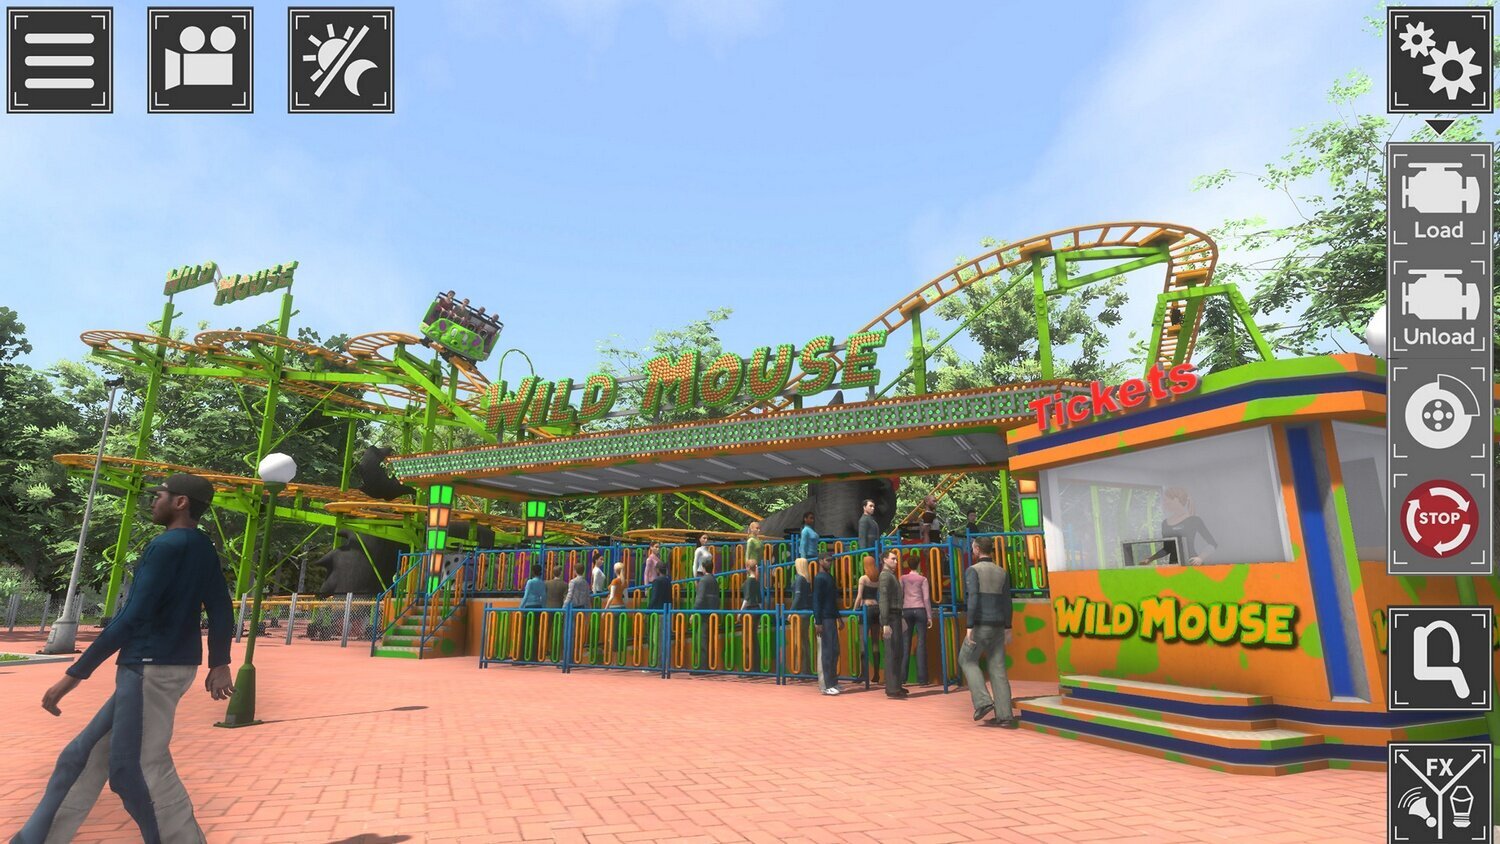 PS4 Theme Park Simulator Collector's Edition kaina ir informacija | Kompiuteriniai žaidimai | pigu.lt